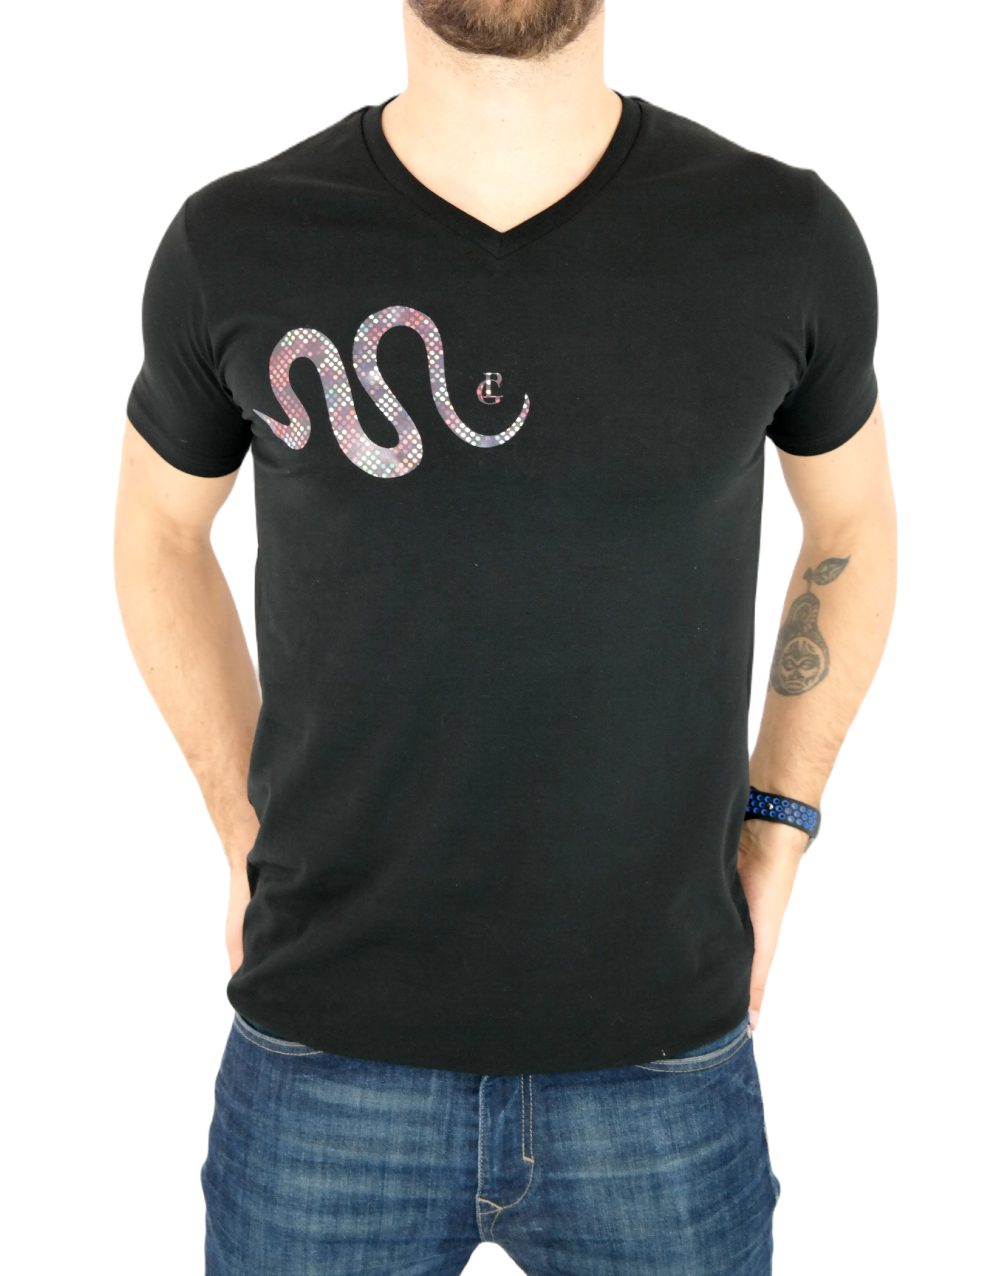 GIOVANNI PERA T-shirt męski czarny TGP72 w szpic, serek , wąż, elastan